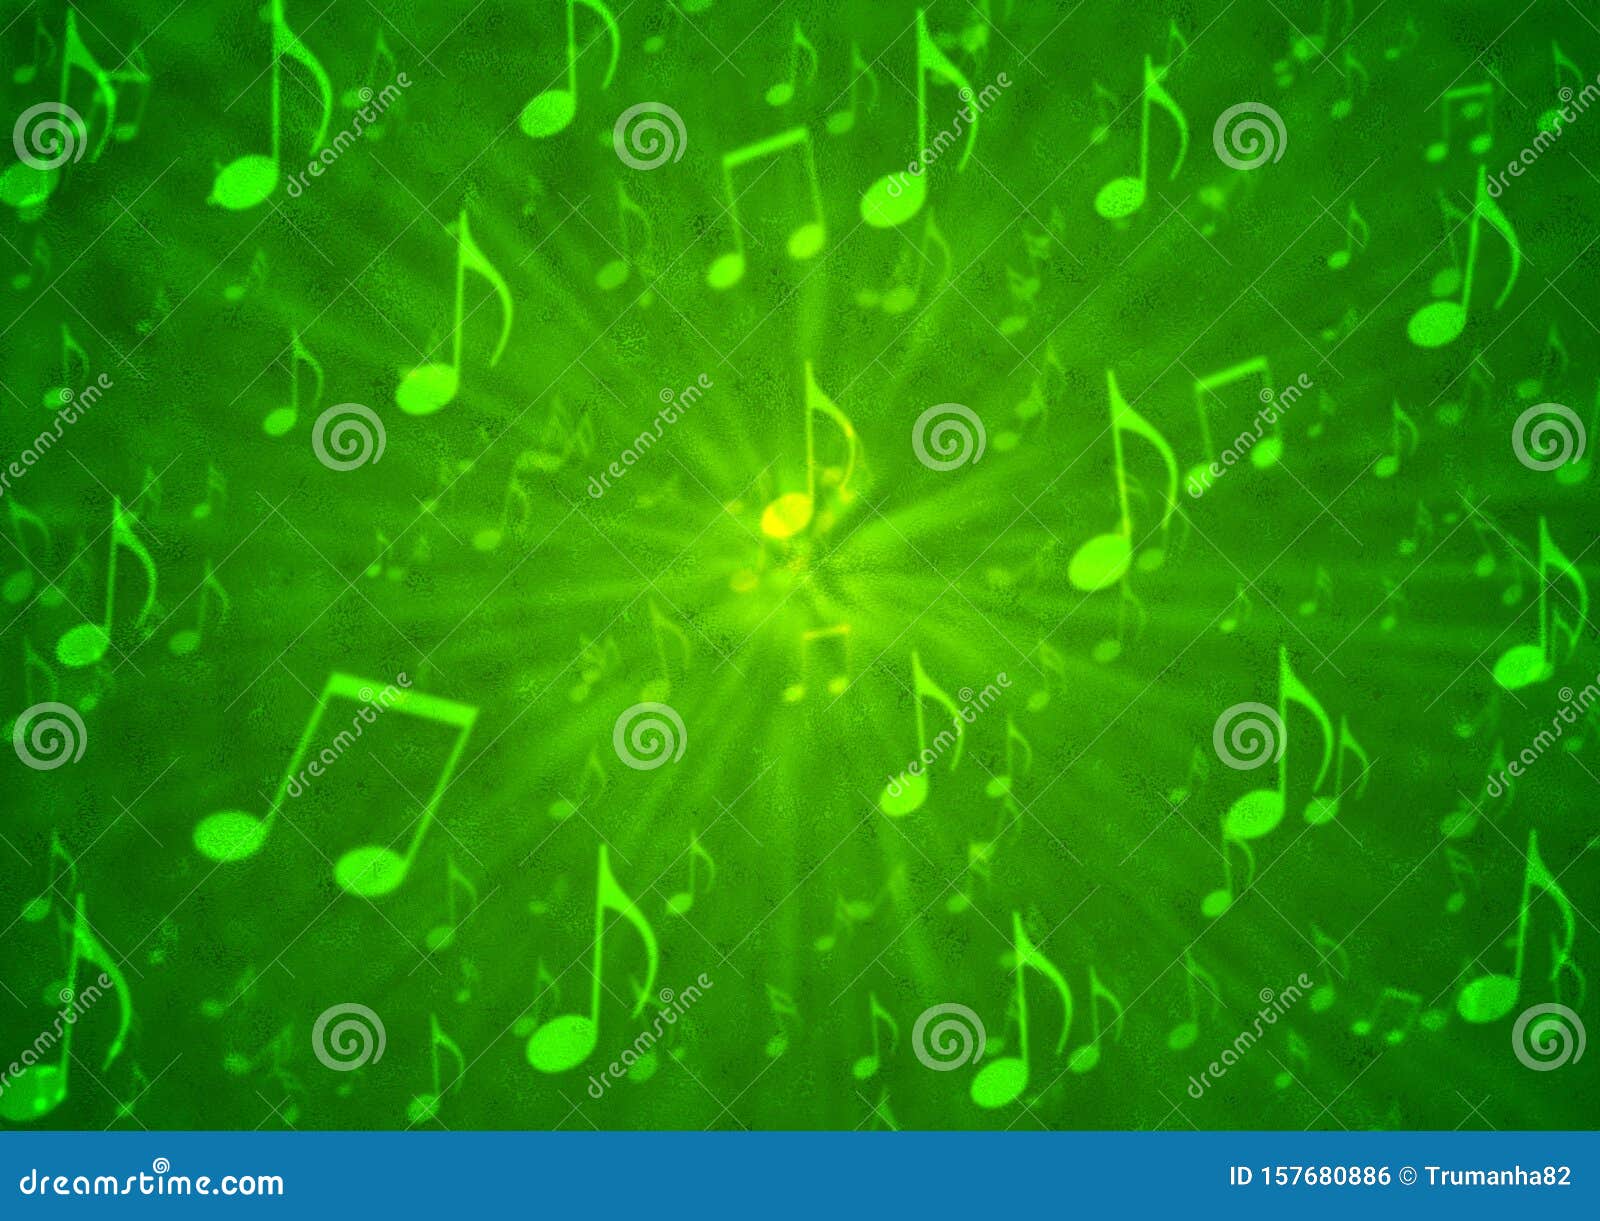 Khám phá ngay bản nền âm nhạc màu xanh lá cây để cảm nhận sự mát mẻ và sôi động của thế giới âm nhạc. Đảm bảo sẽ khiến bạn thích thú và bùng nổ cùng các bản nhạc màu xanh đầy cuốn hút.